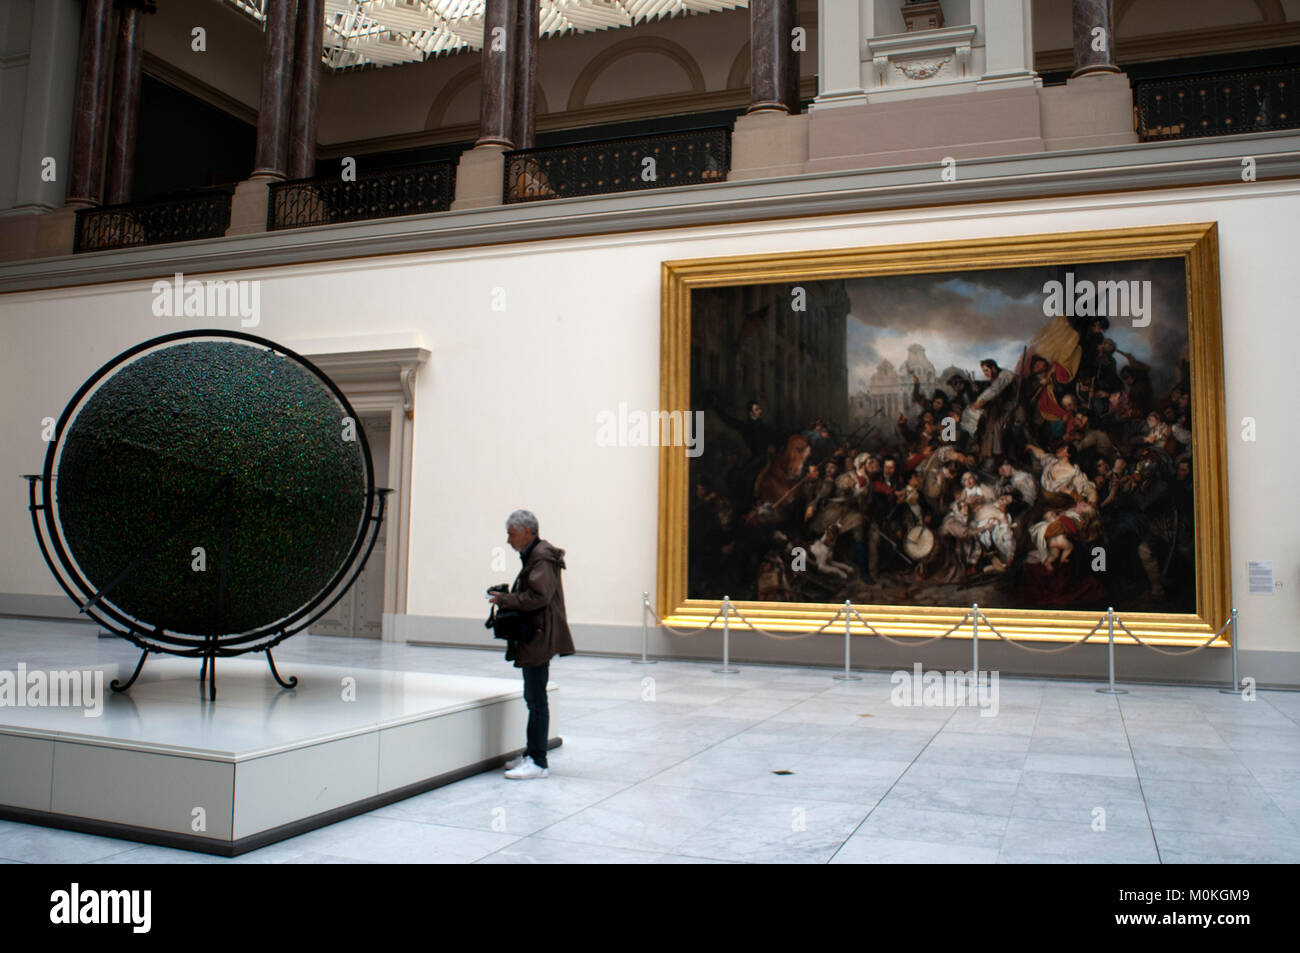 Musées royaux des Beaux-Arts de Belgique, Royal Museums of Fine Arts, Rue du Musée, Brussels, Belgium, Europe Stock Photo